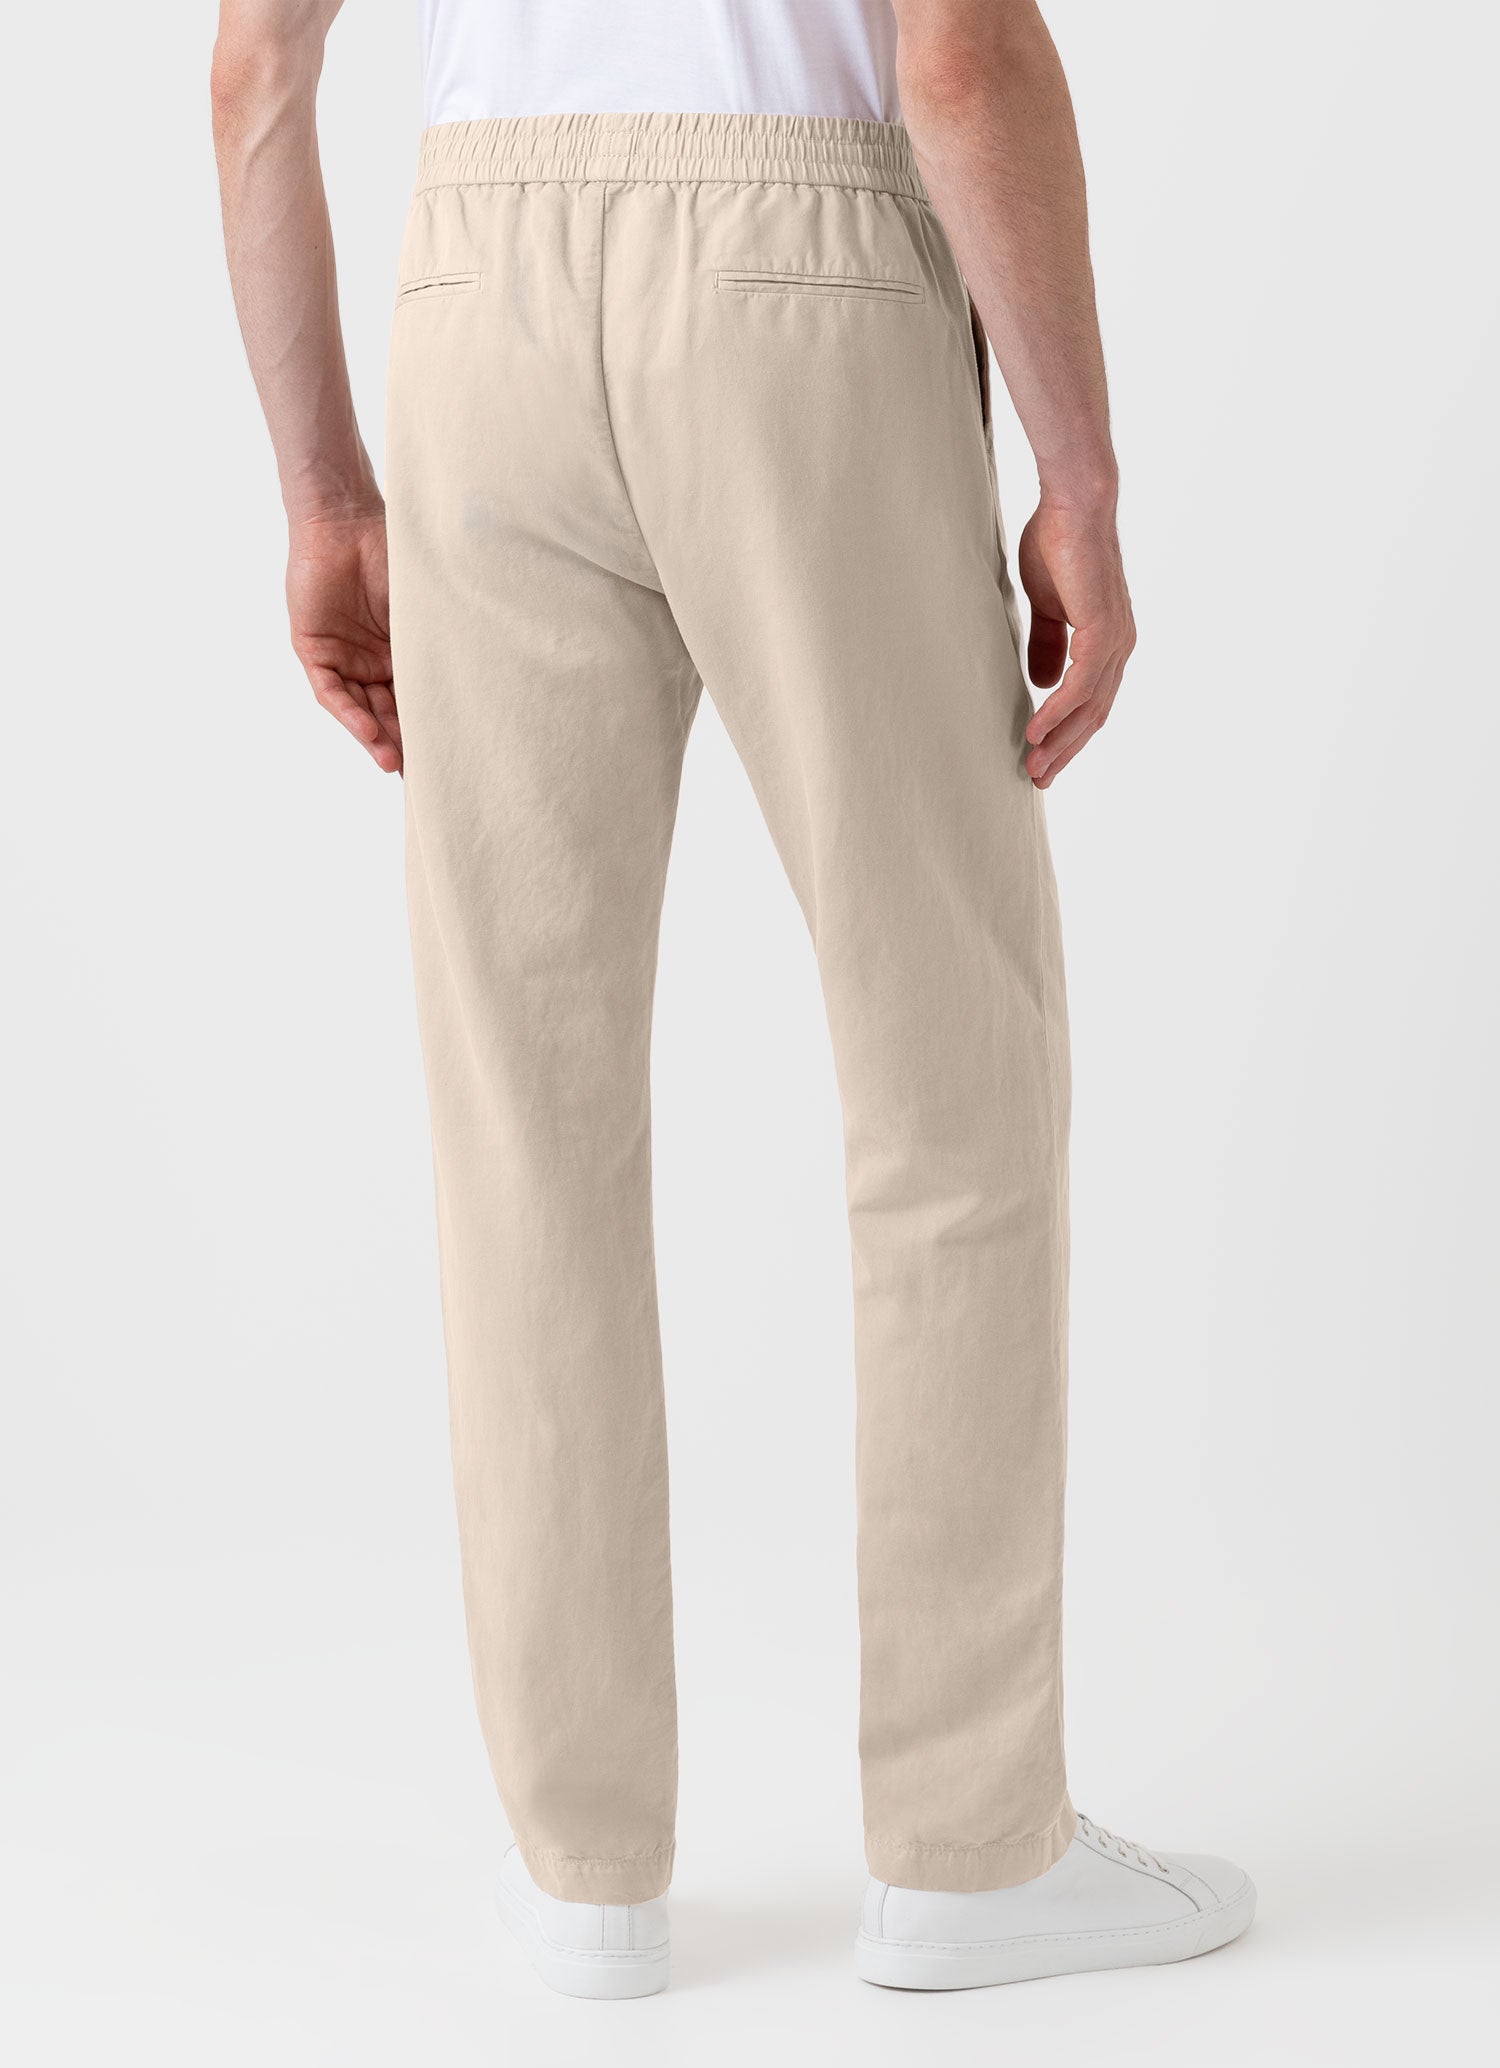 Men's Cotton Linen Drawstring  Trouser in Light Sand